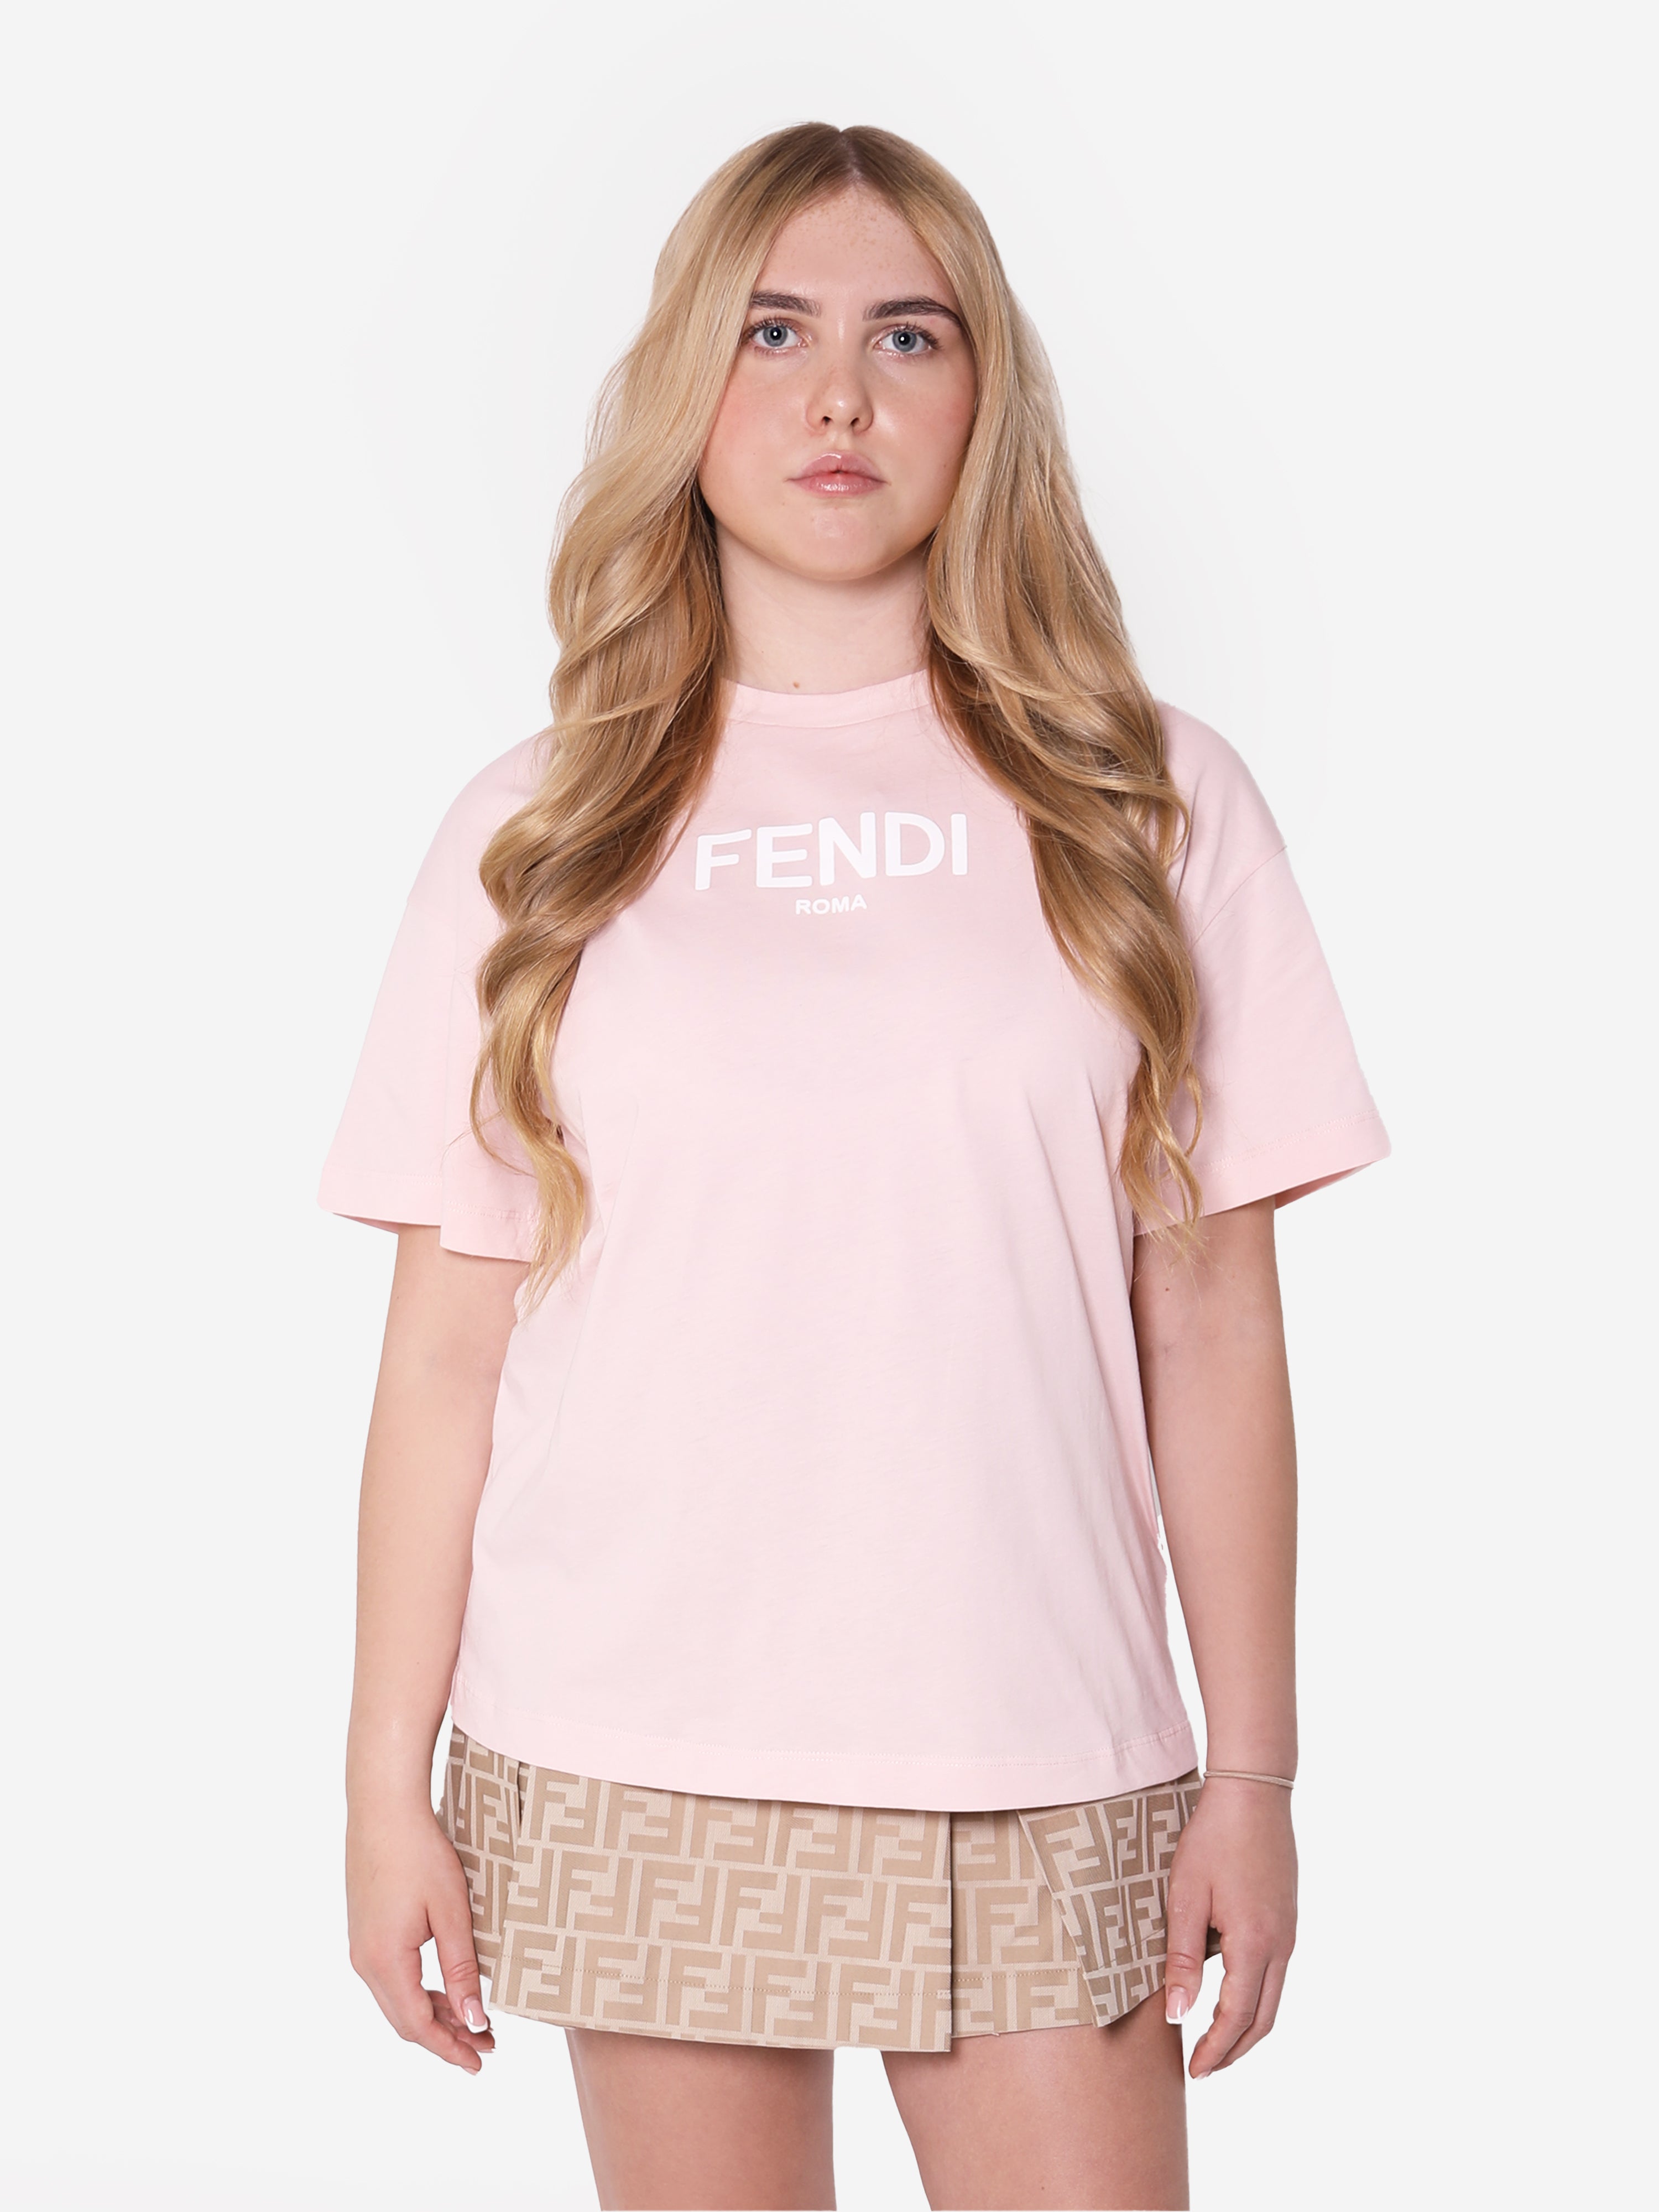 Fendi Babies' Girls Logo T-shirt In Pink